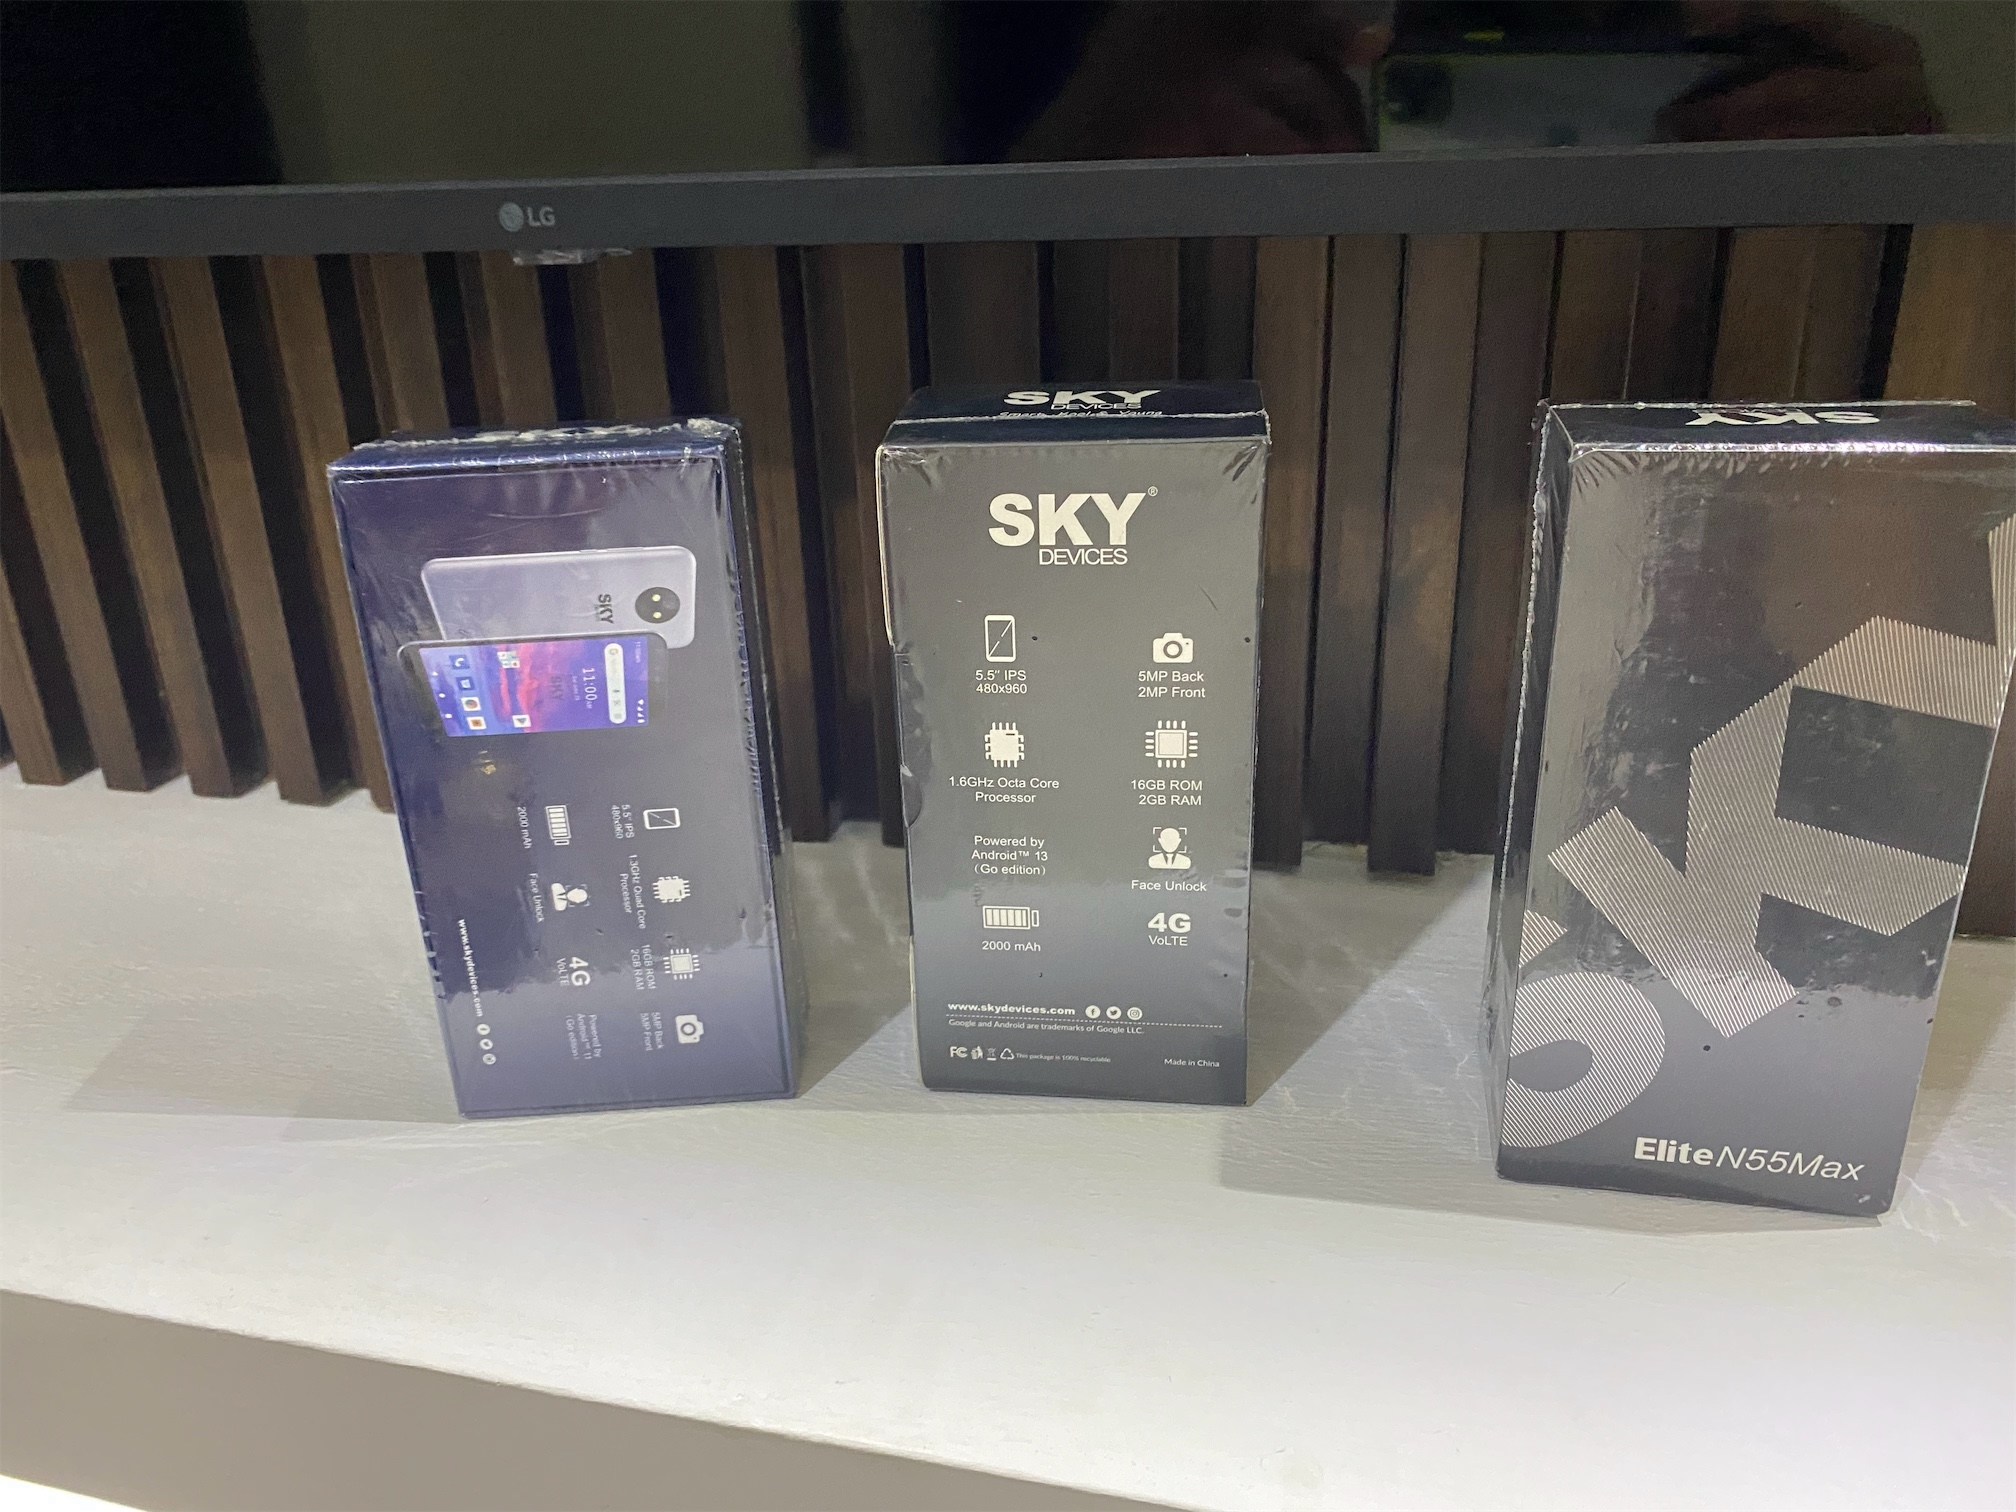 celulares y tabletas - Sky Devices Elite N55 MAX R55 9